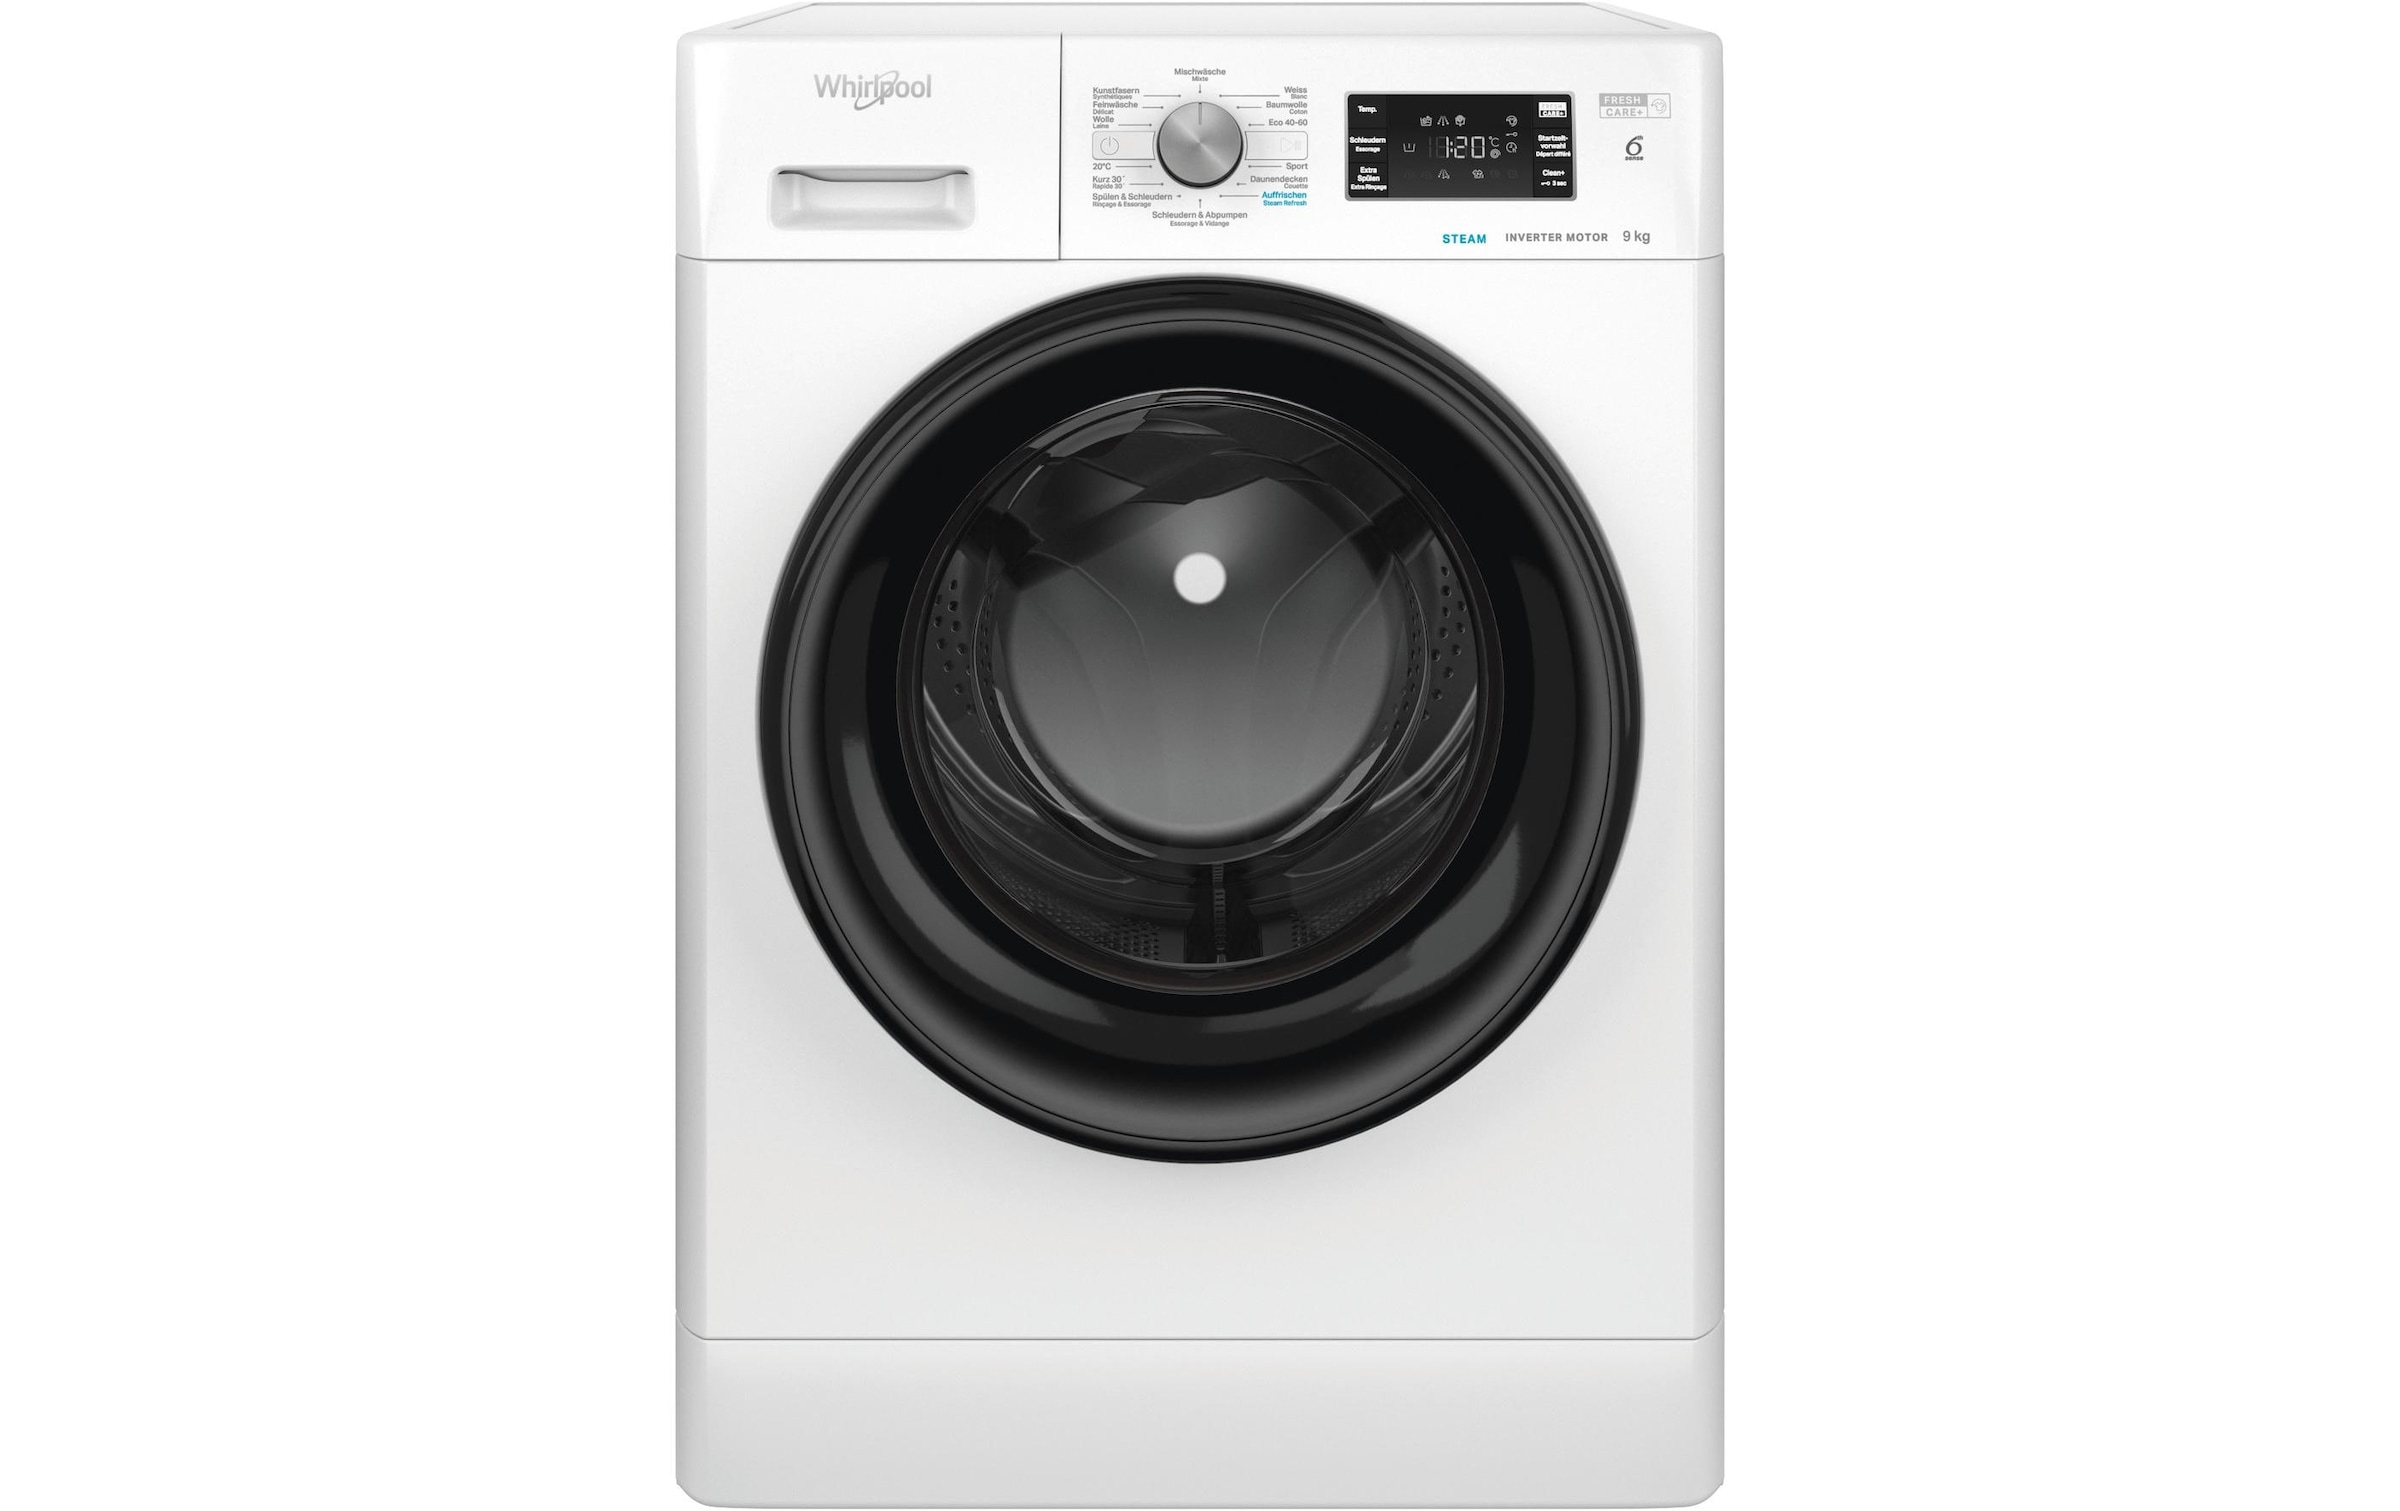 Whirlpool Waschmaschine »Waschmaschine WM FCH 914 A«, WM FCH 914 A, 1300 U/min